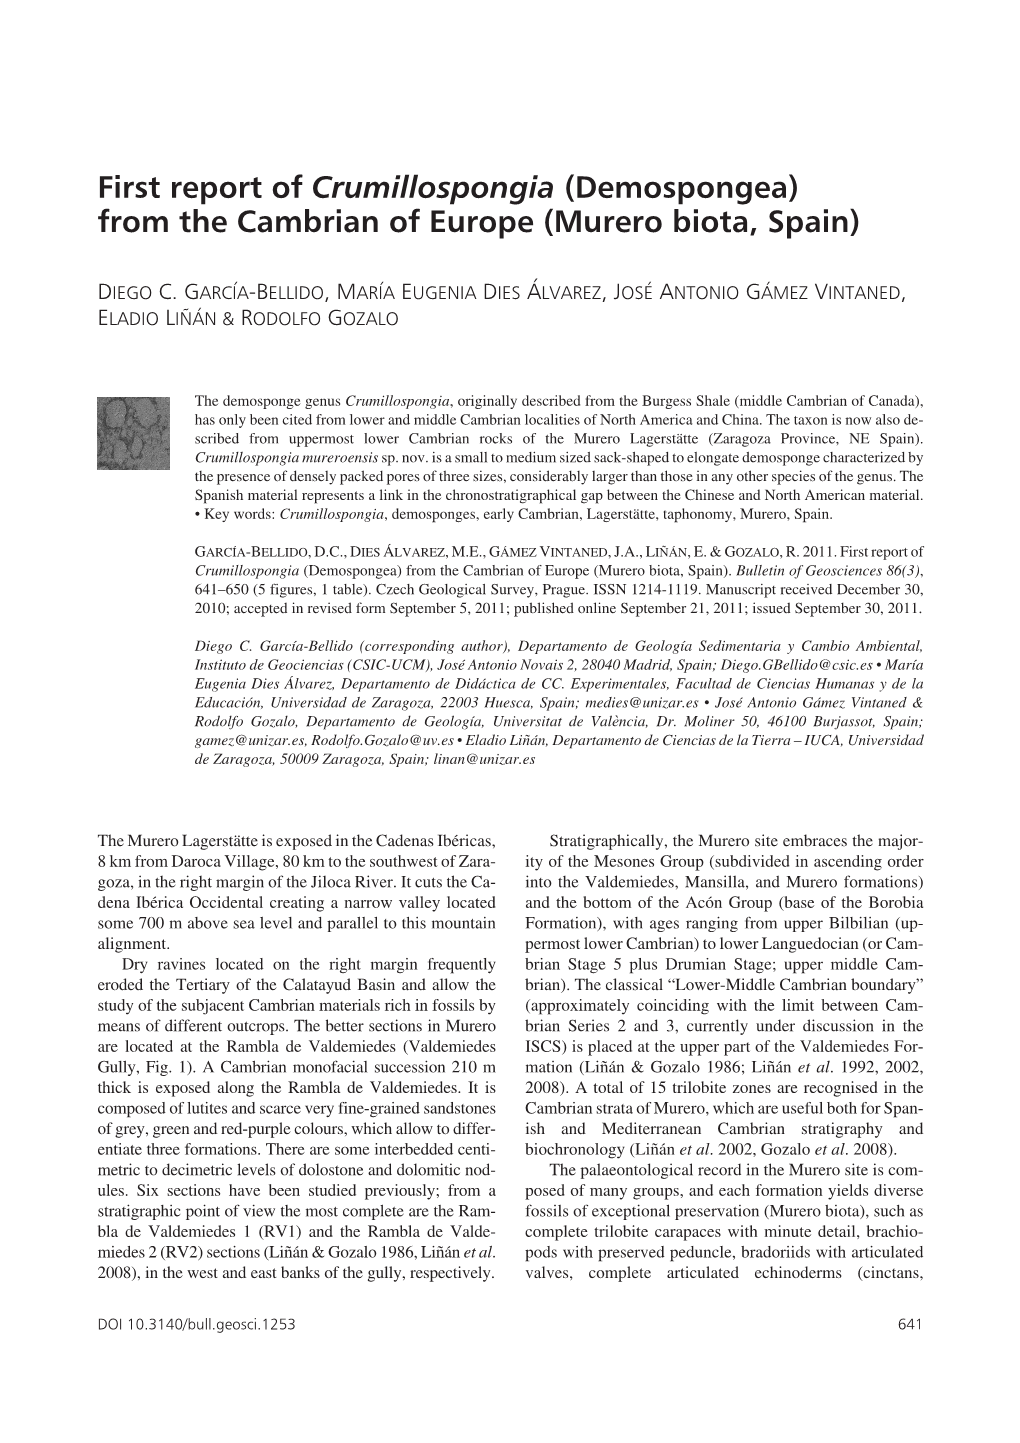 First Report of Crumillospongia (Demospongea) from the Cambrian of Europe (Murero Biota, Spain)